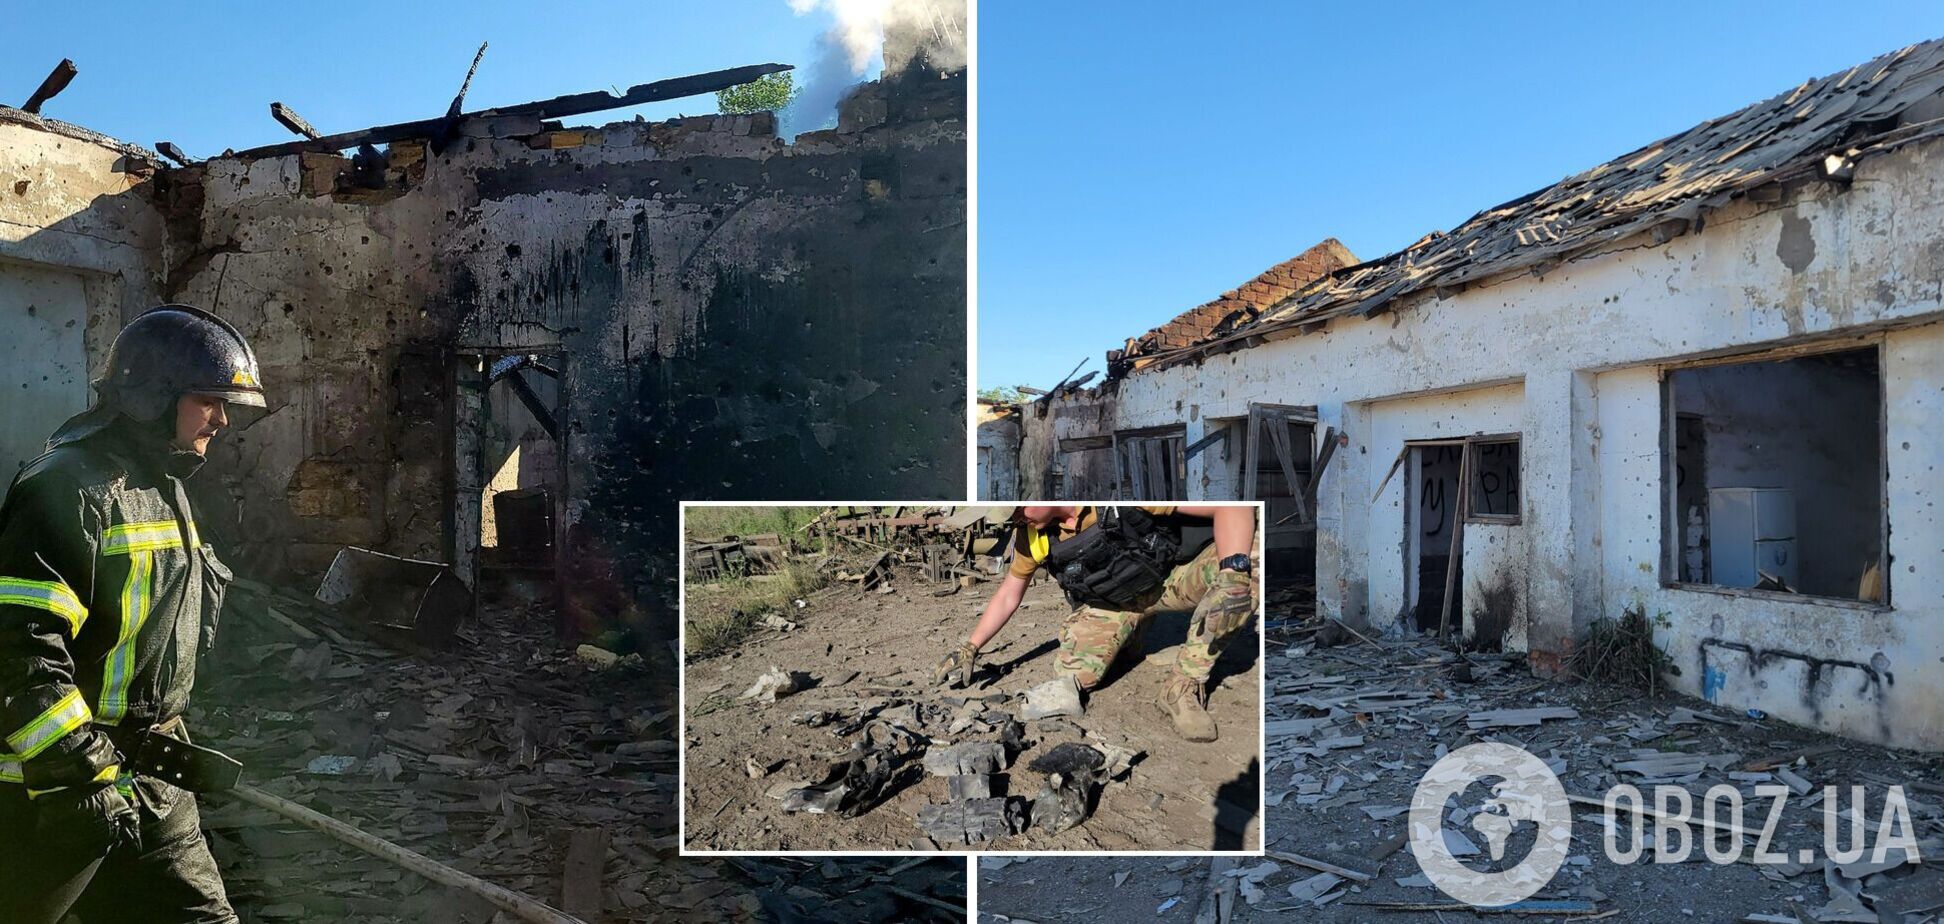 Вражеская авиация 'демилитаризировала' сельхозхозяйство на Одесчине: появились фото последствий ракетного удара